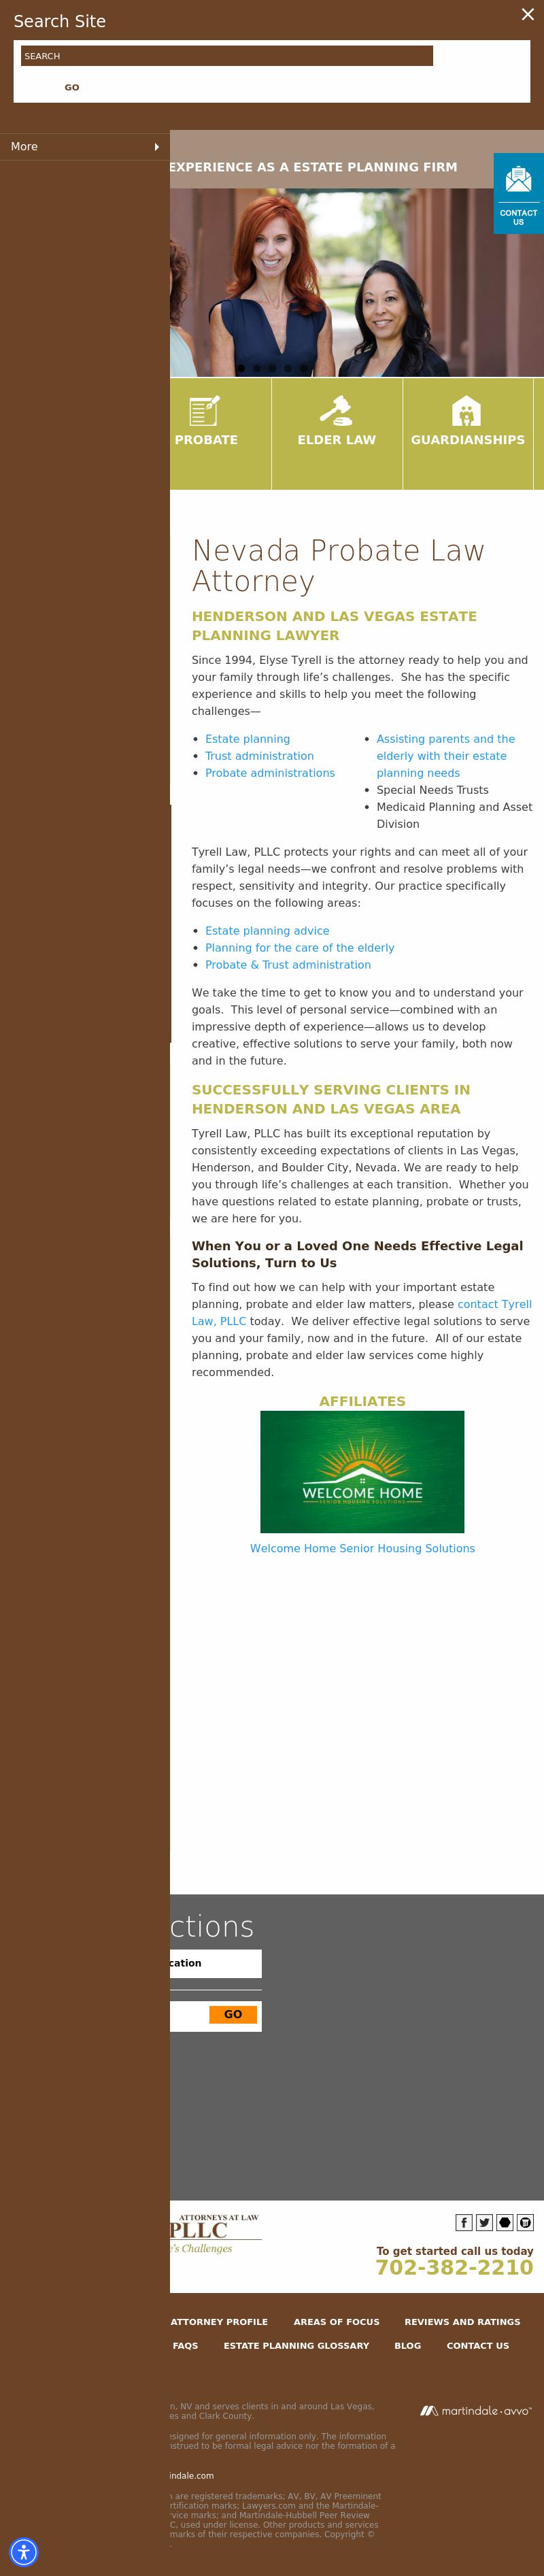 Tyrell Law, PLLC - Las Vegas NV Lawyers